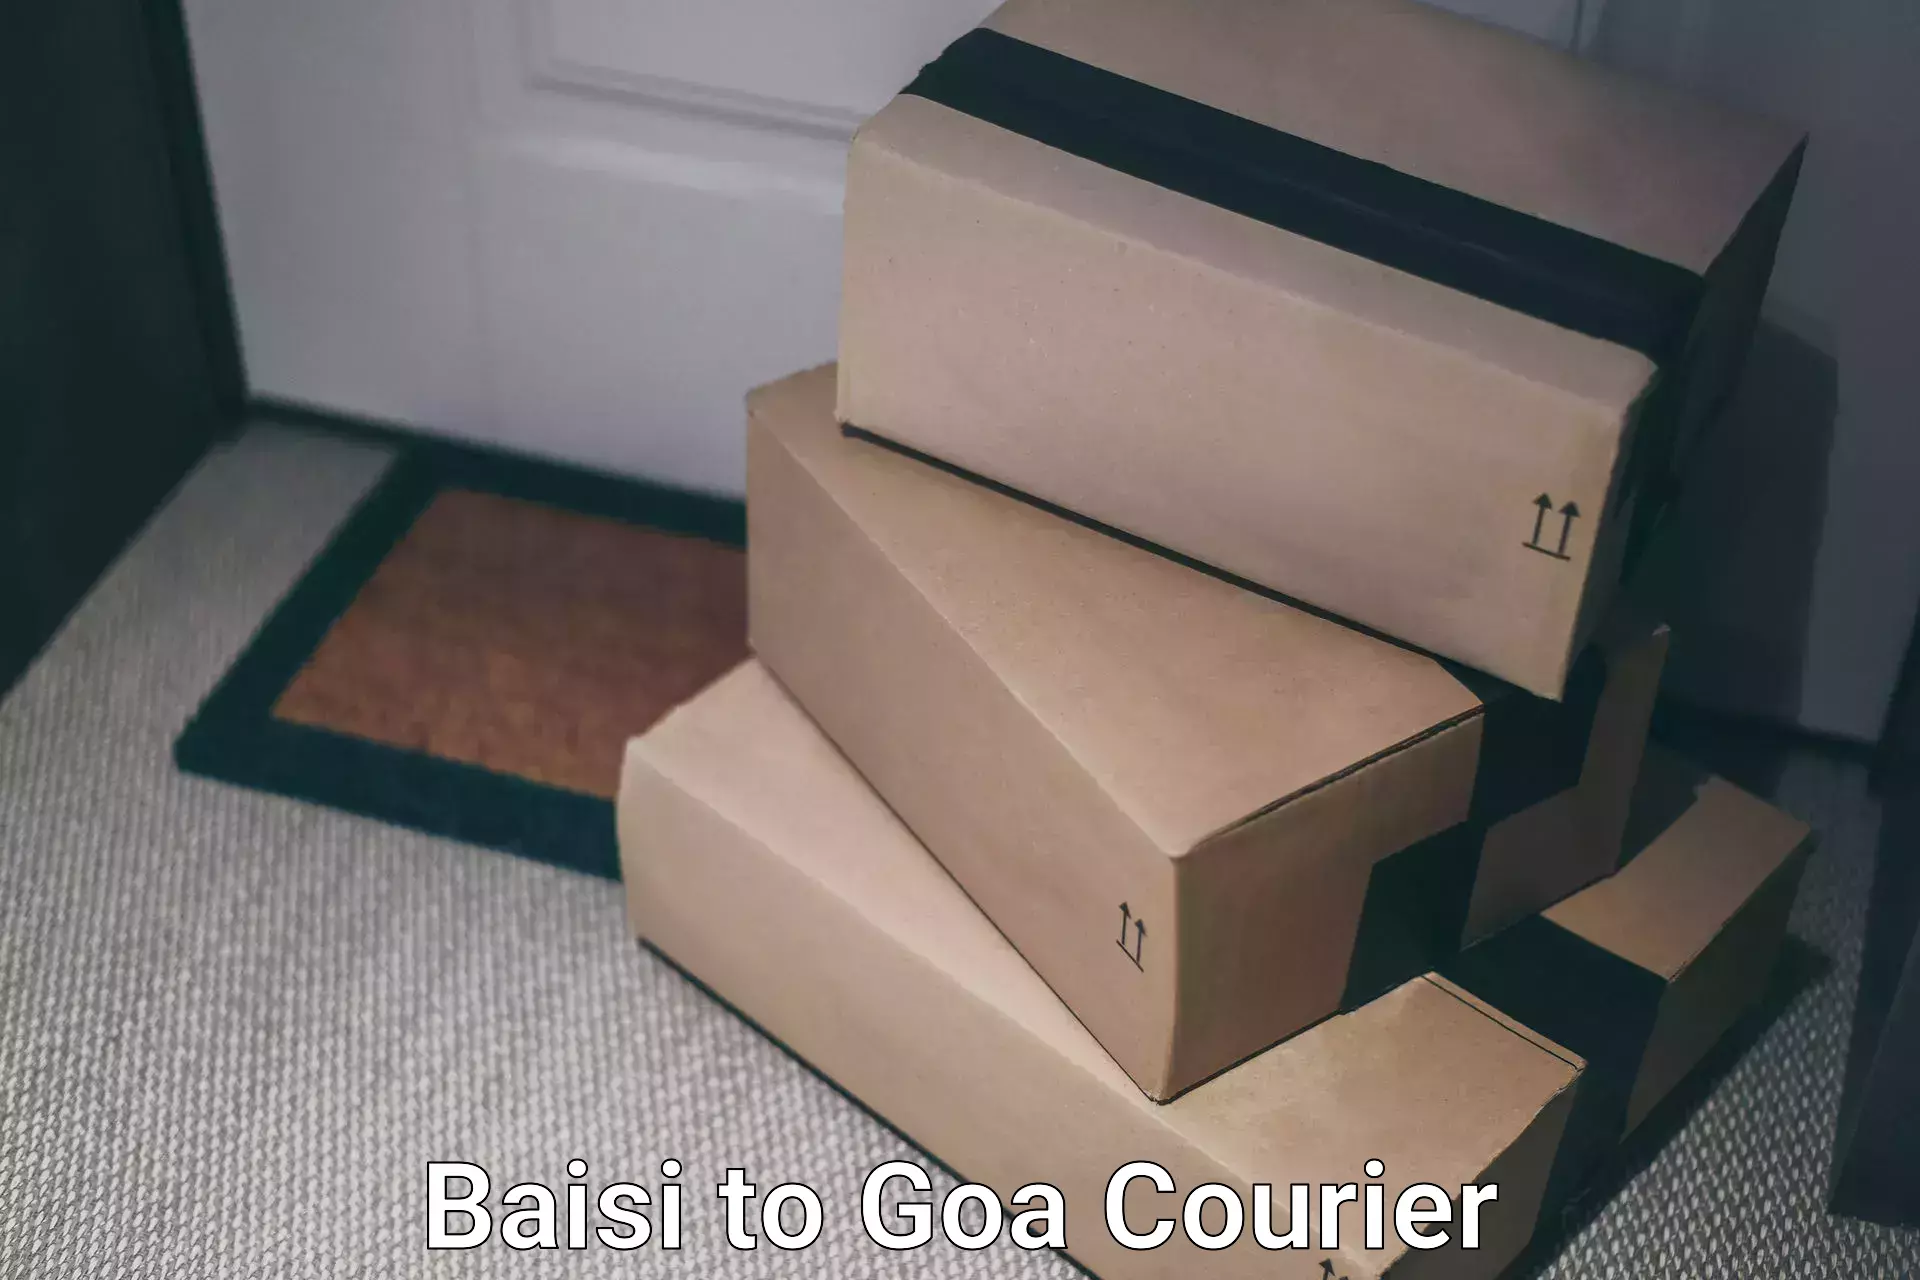 Efficient freight service Baisi to Goa